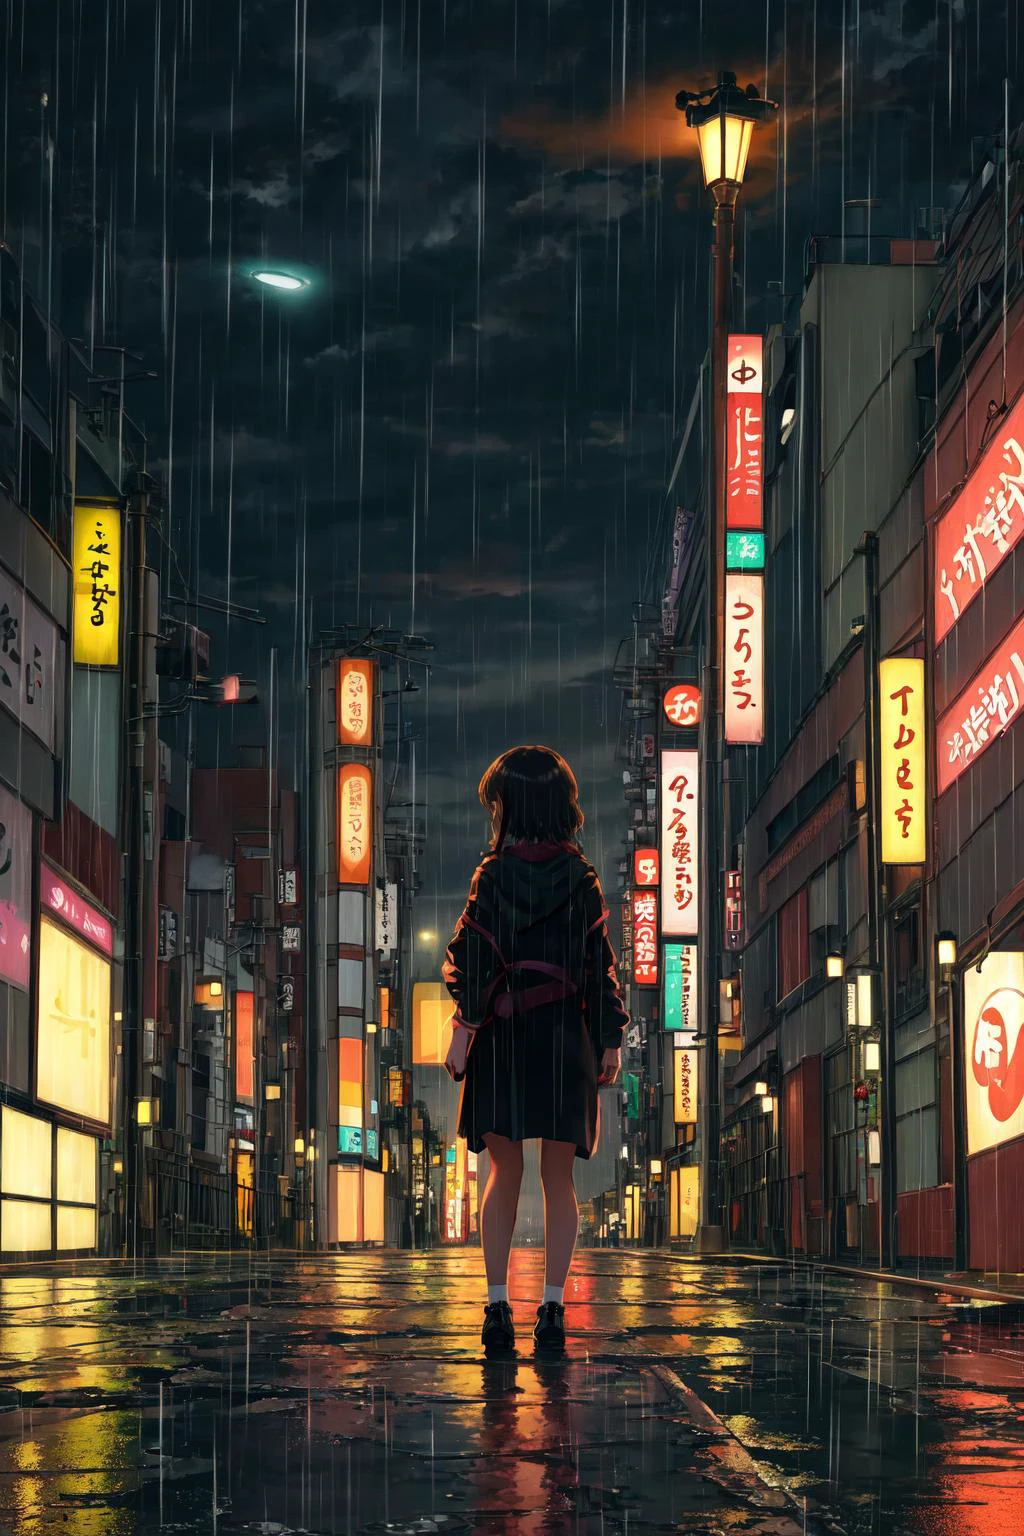 Obra de arte,melhor qualidade,1 garota,Sozinho,olhando para o espectador,Tarde da noite, Tóquio, rua deserta, visão distante, Fundo, solidão, chuva, luzes da rua, Luz fraca,